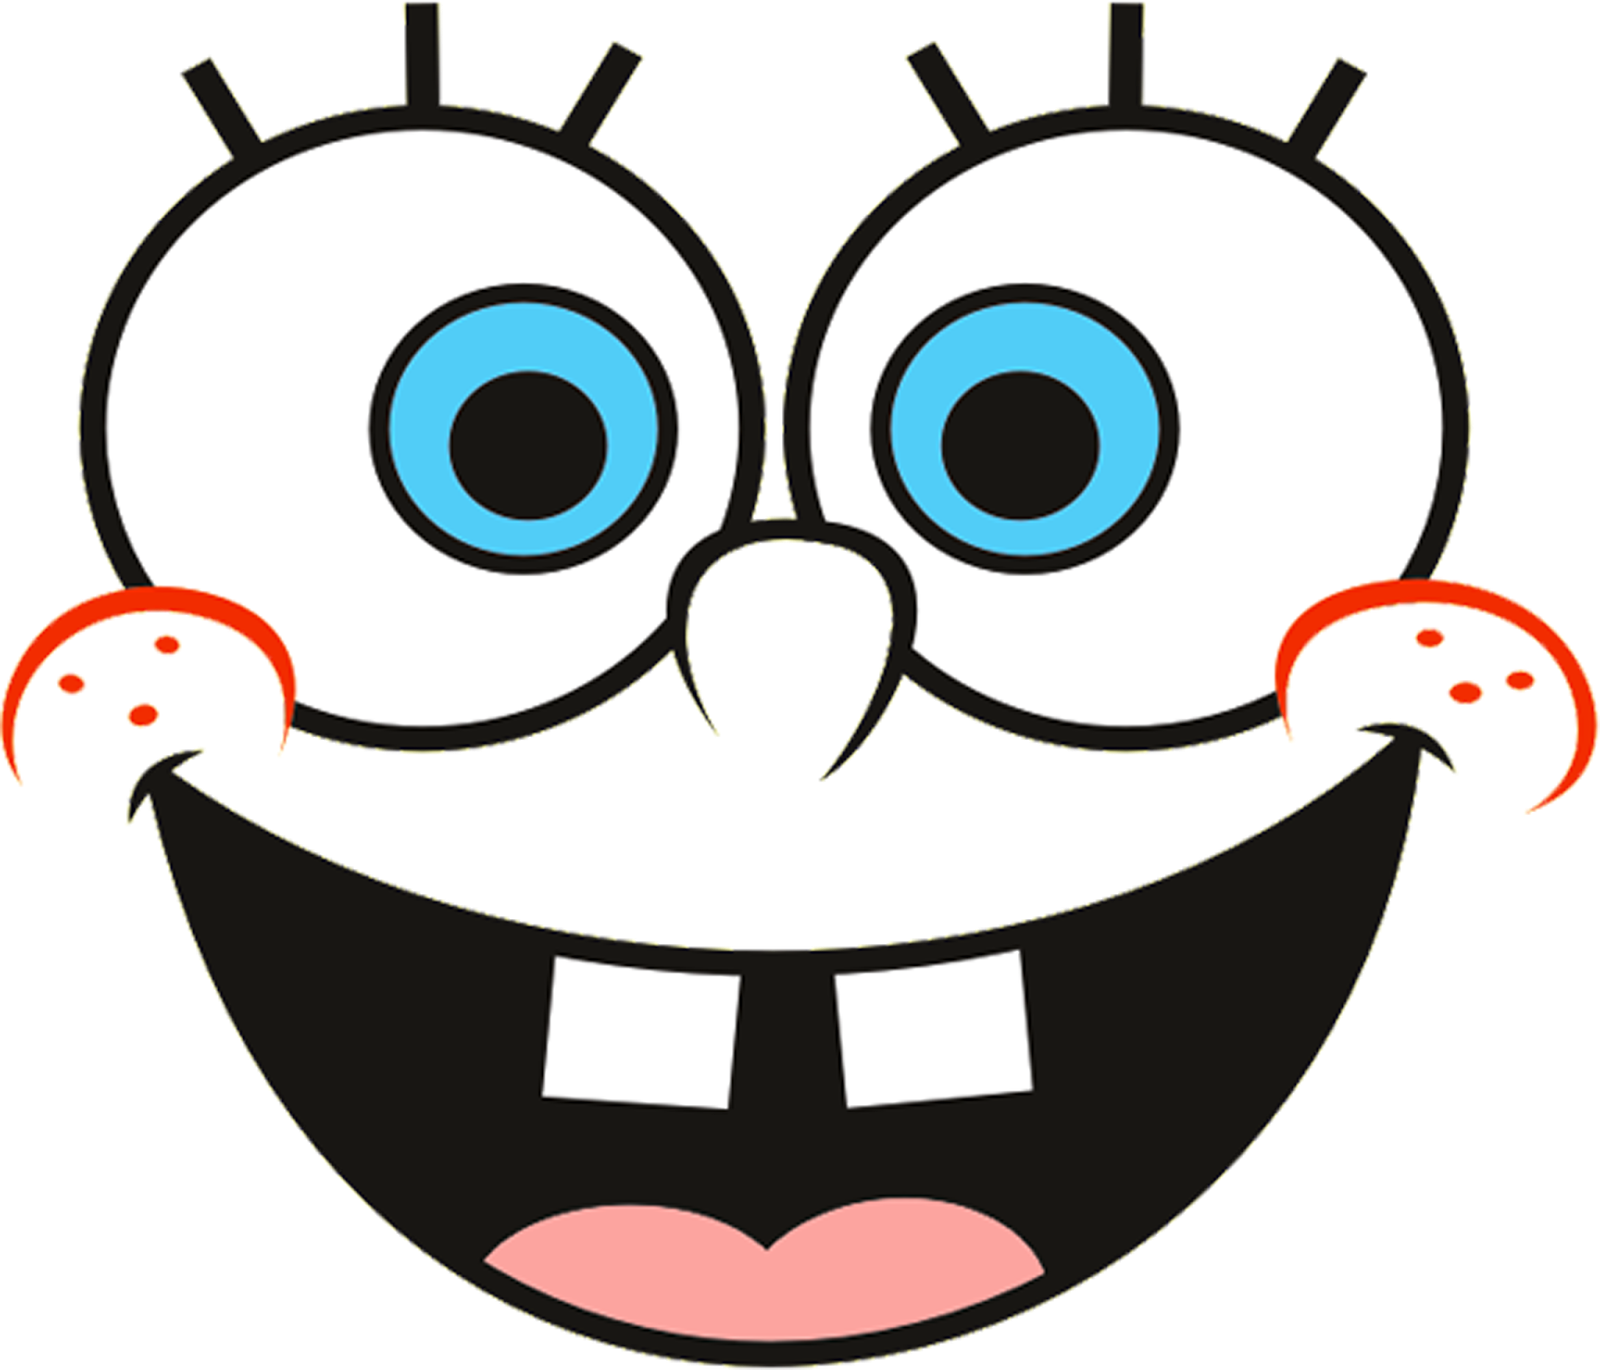 Spongebob Big Eyes Background Image PNG